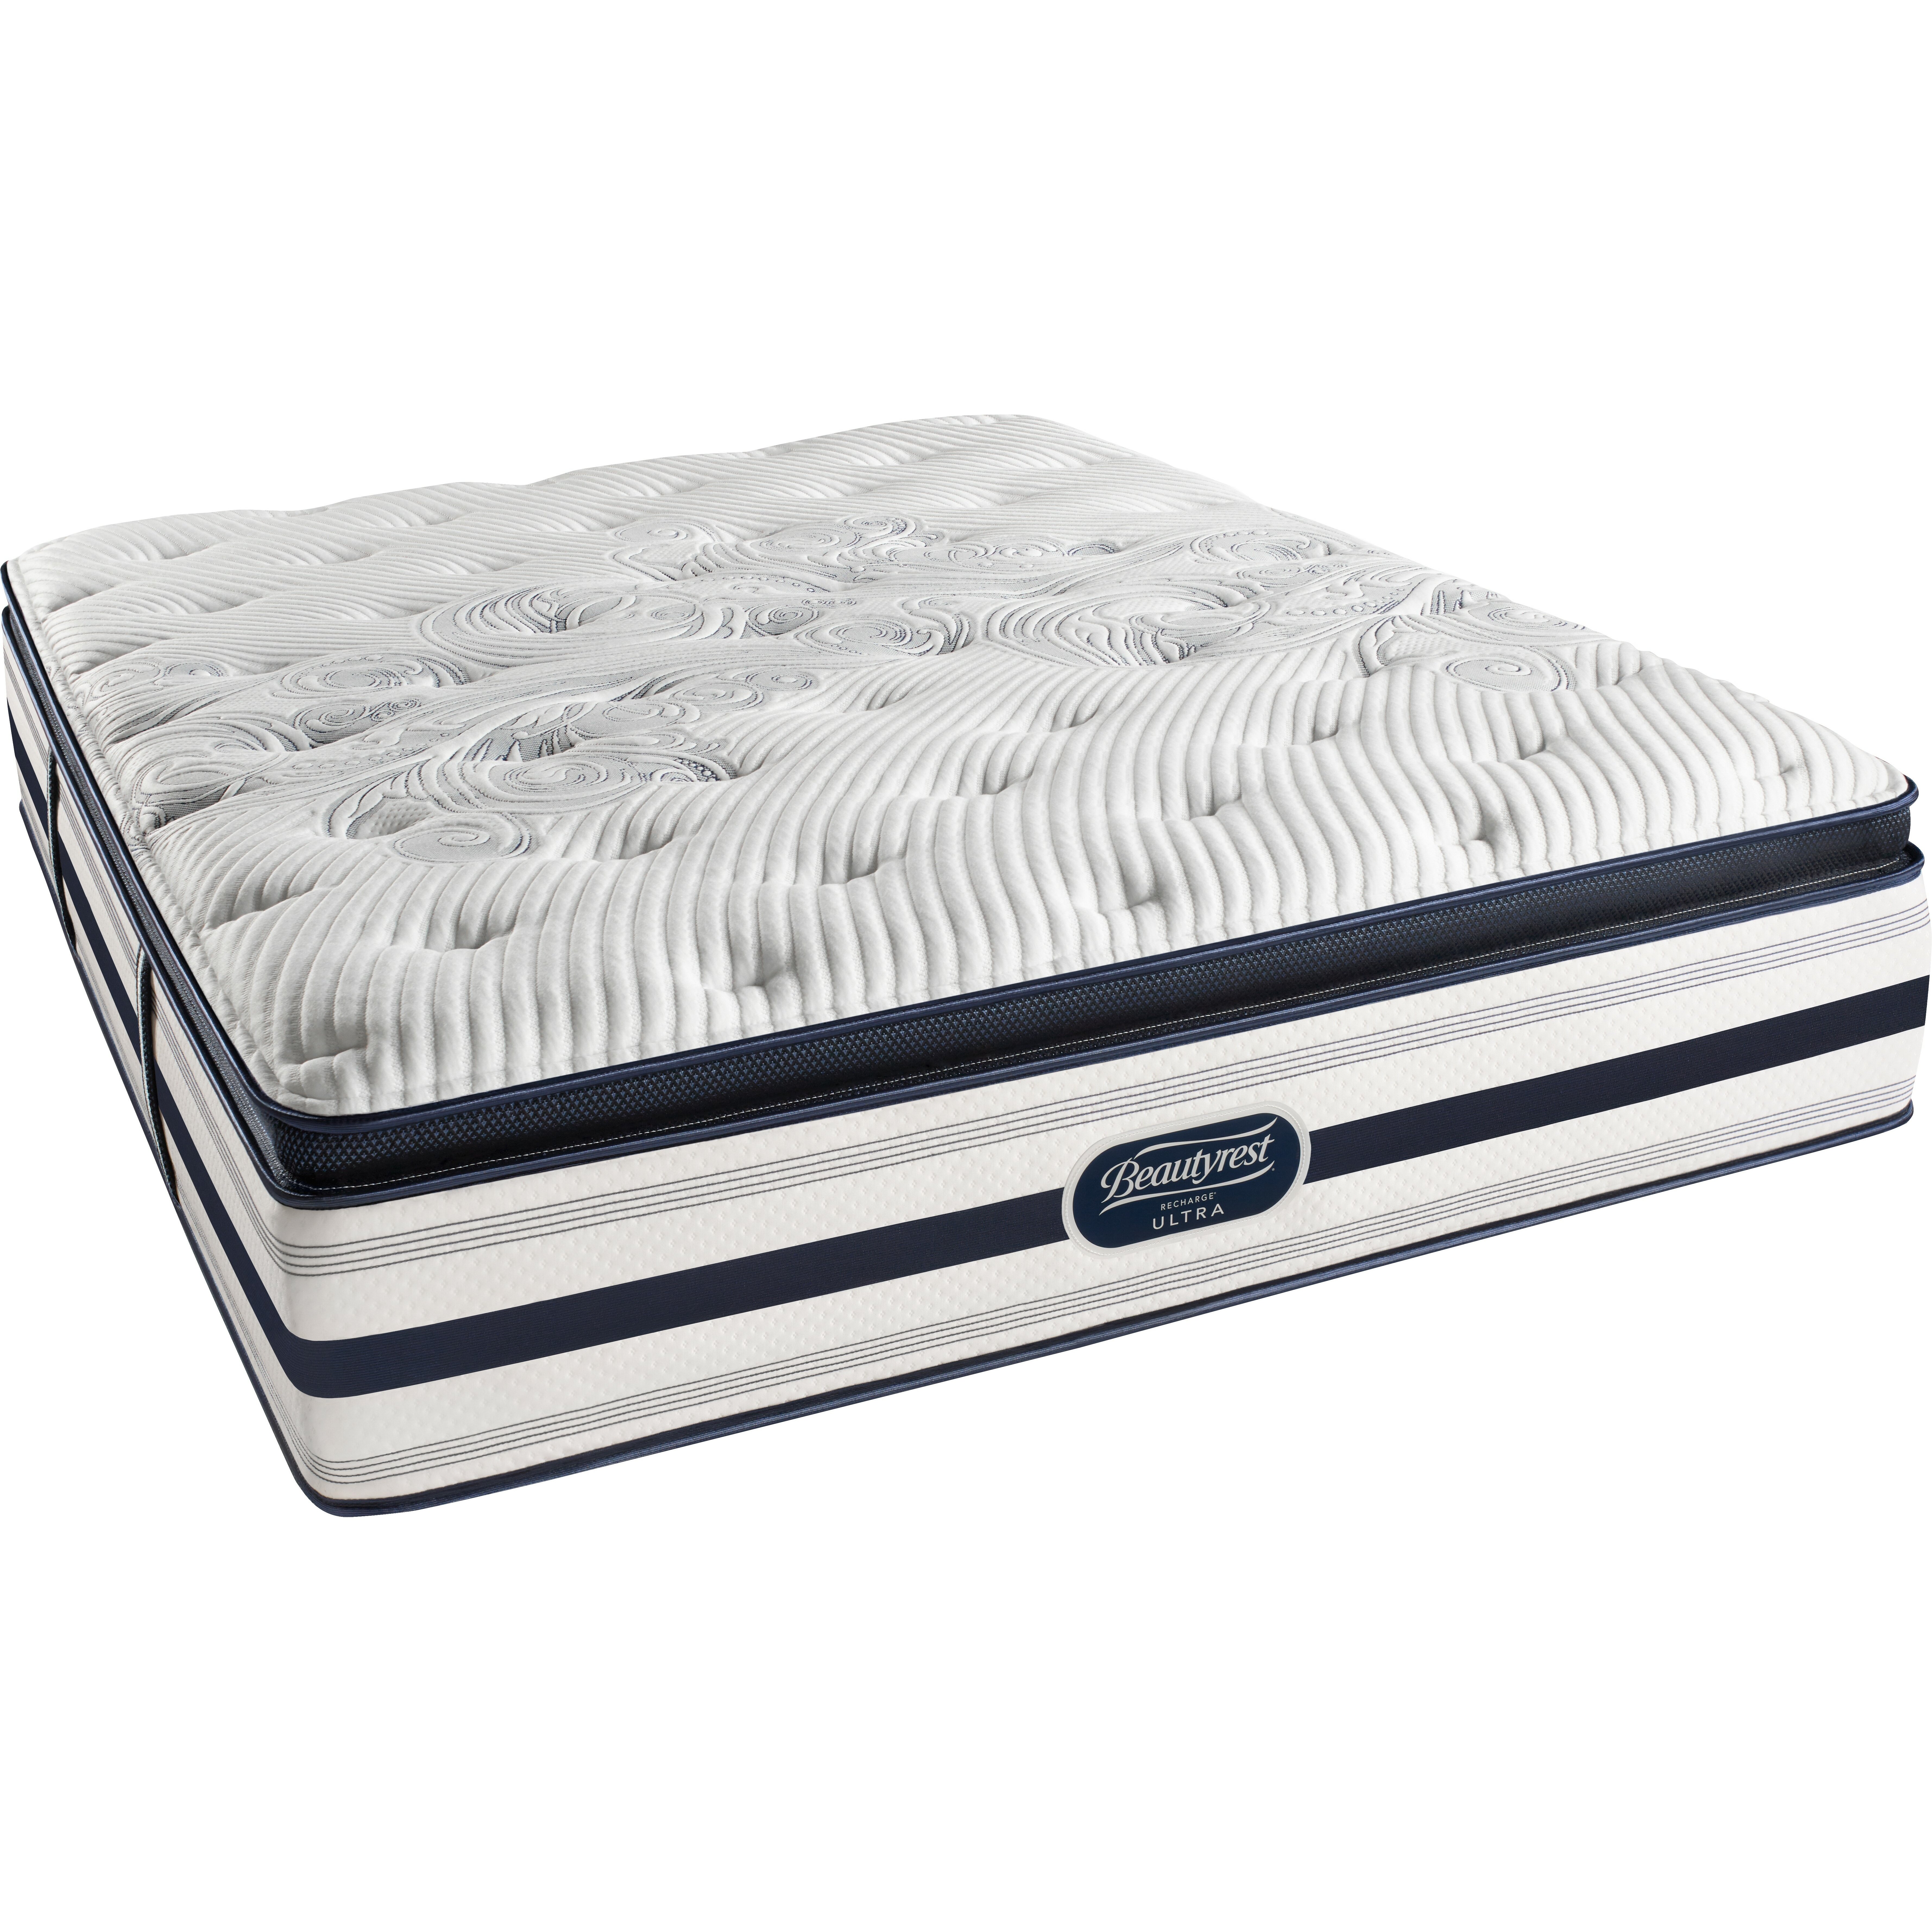 simmons beautyrest mattress